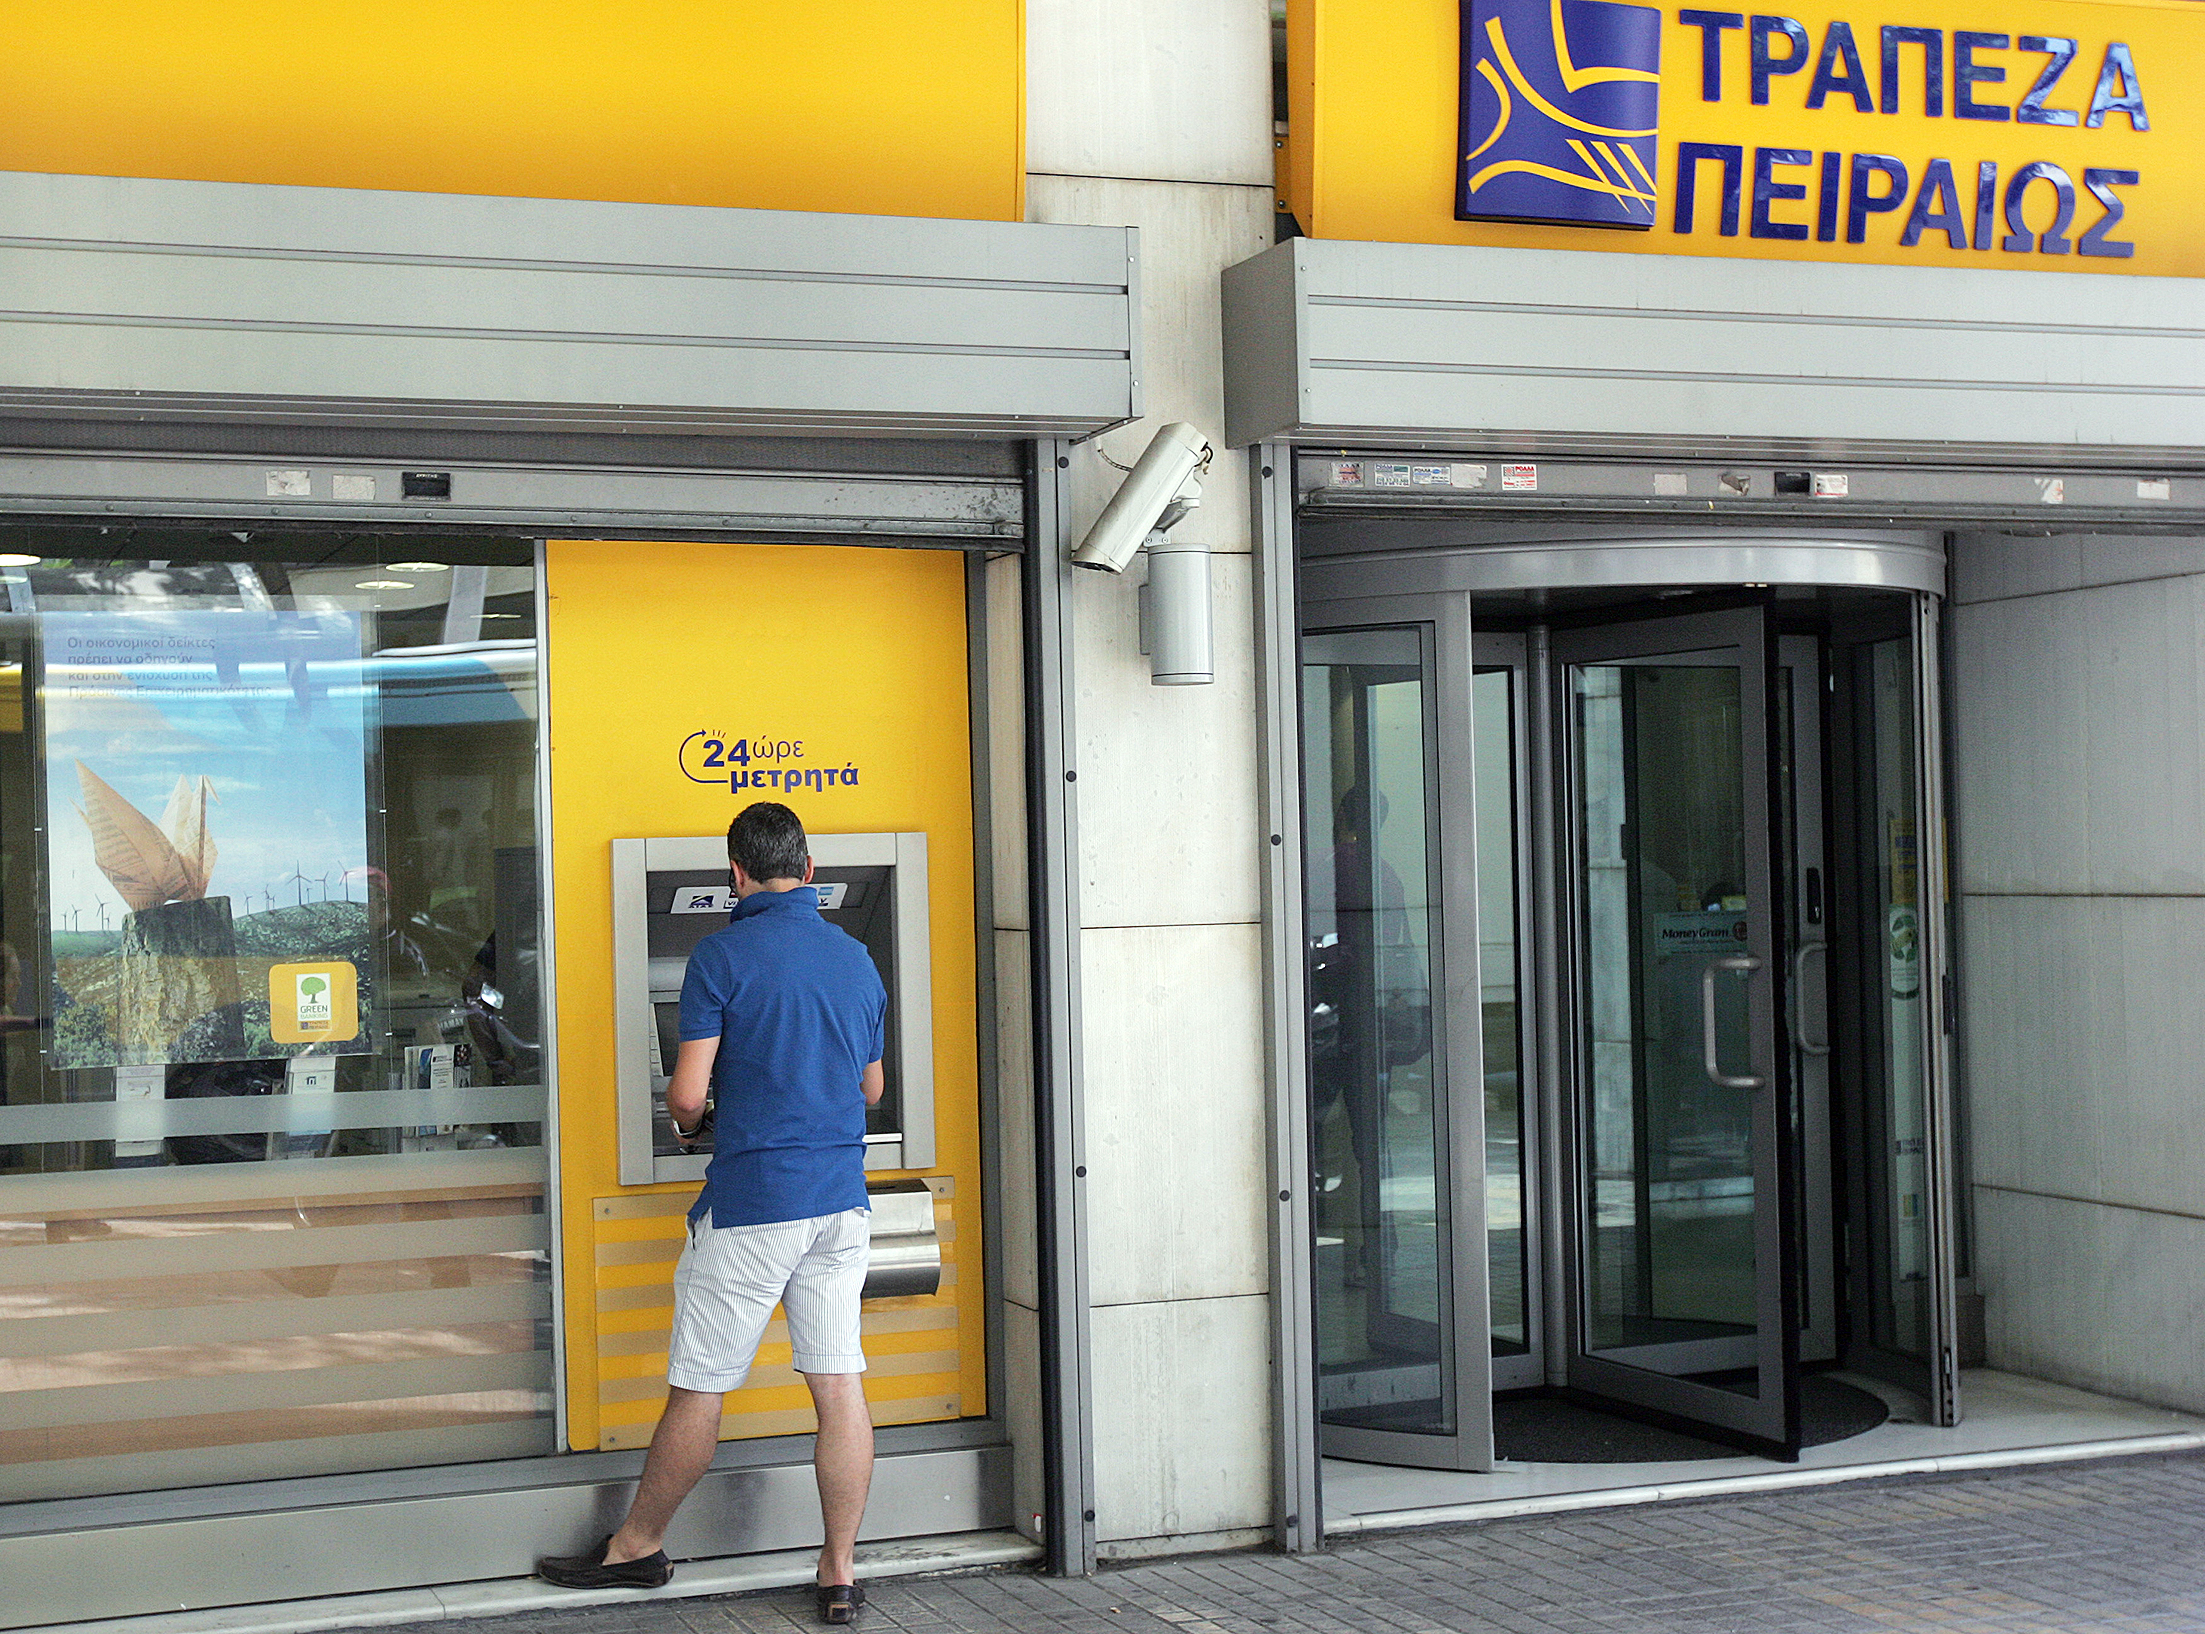 Ξεπέρασαν τα 1,4 δισ. ευρώ τα ιδιωτικά κεφάλαια στην αύξηση της Πειραιώς | tovima.gr